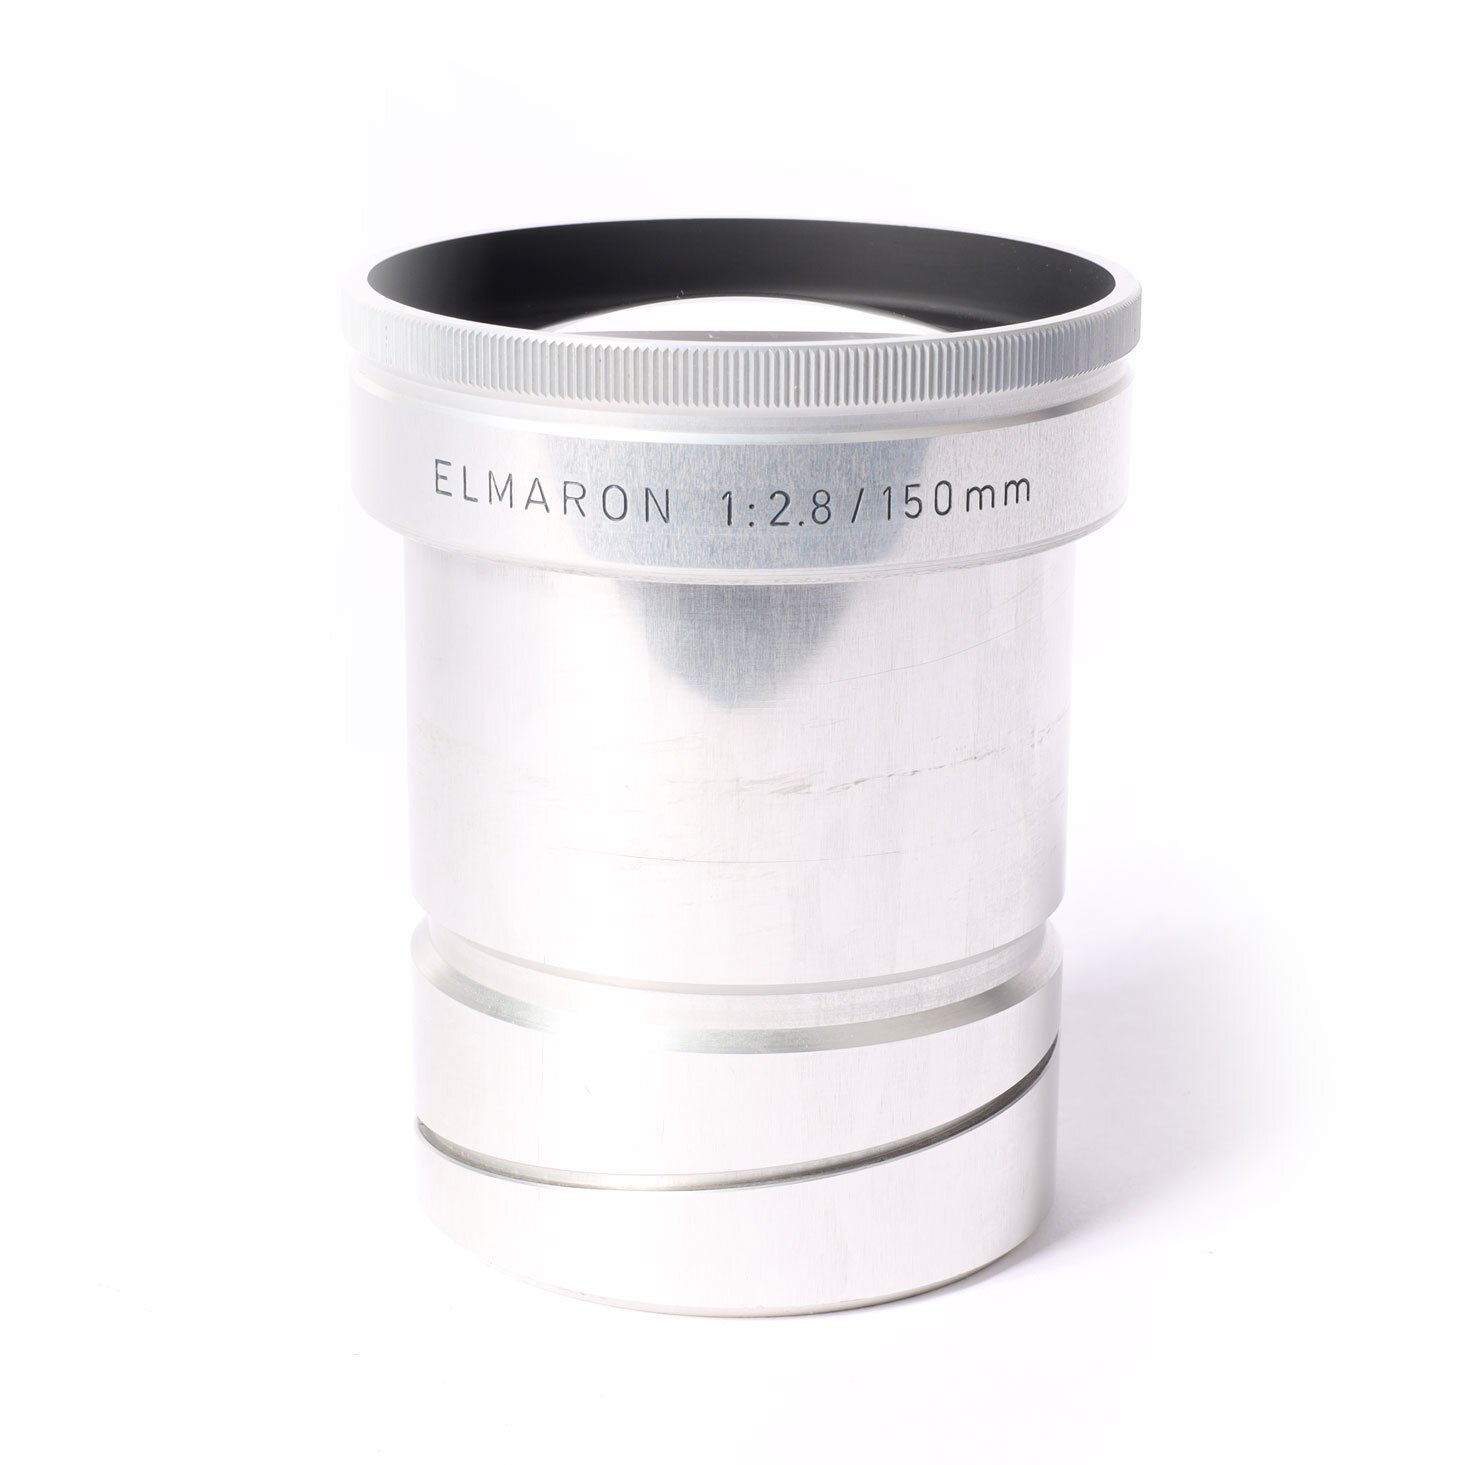 Leica Elmaron 2.8/150mm Projektionsobjektiv